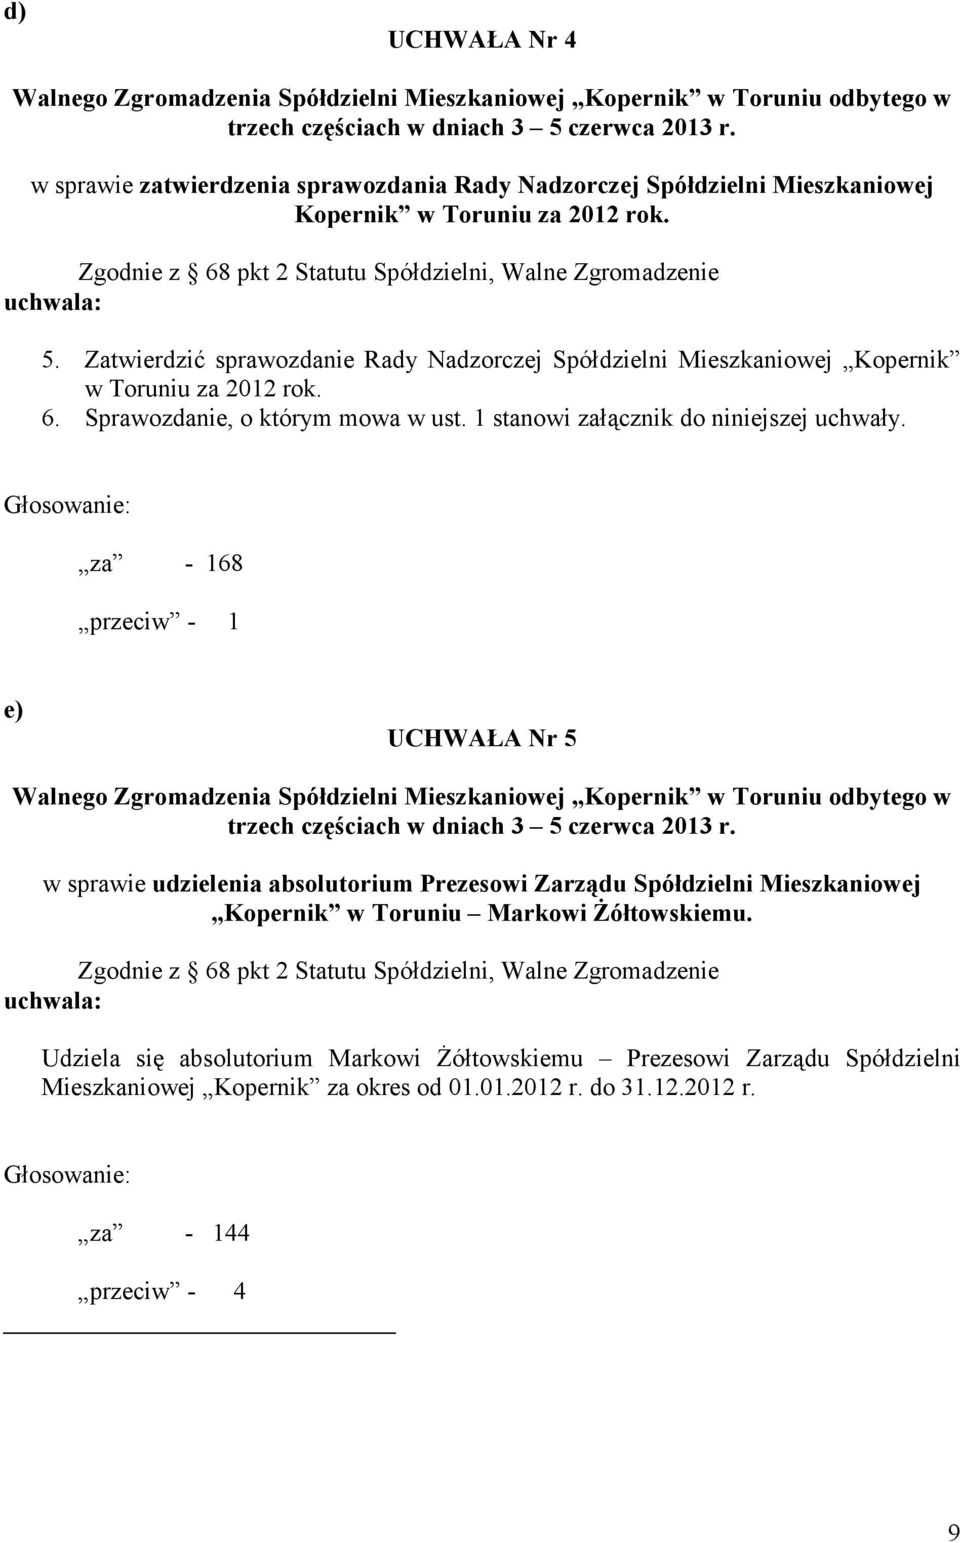 Zatwierdzić sprawozdanie Rady Nadzorczej Spółdzielni Mieszkaniowej Kopernik w Toruniu za 2012 rok. 6. Sprawozdanie, o którym mowa w ust. 1 stanowi załącznik do niniejszej uchwały.